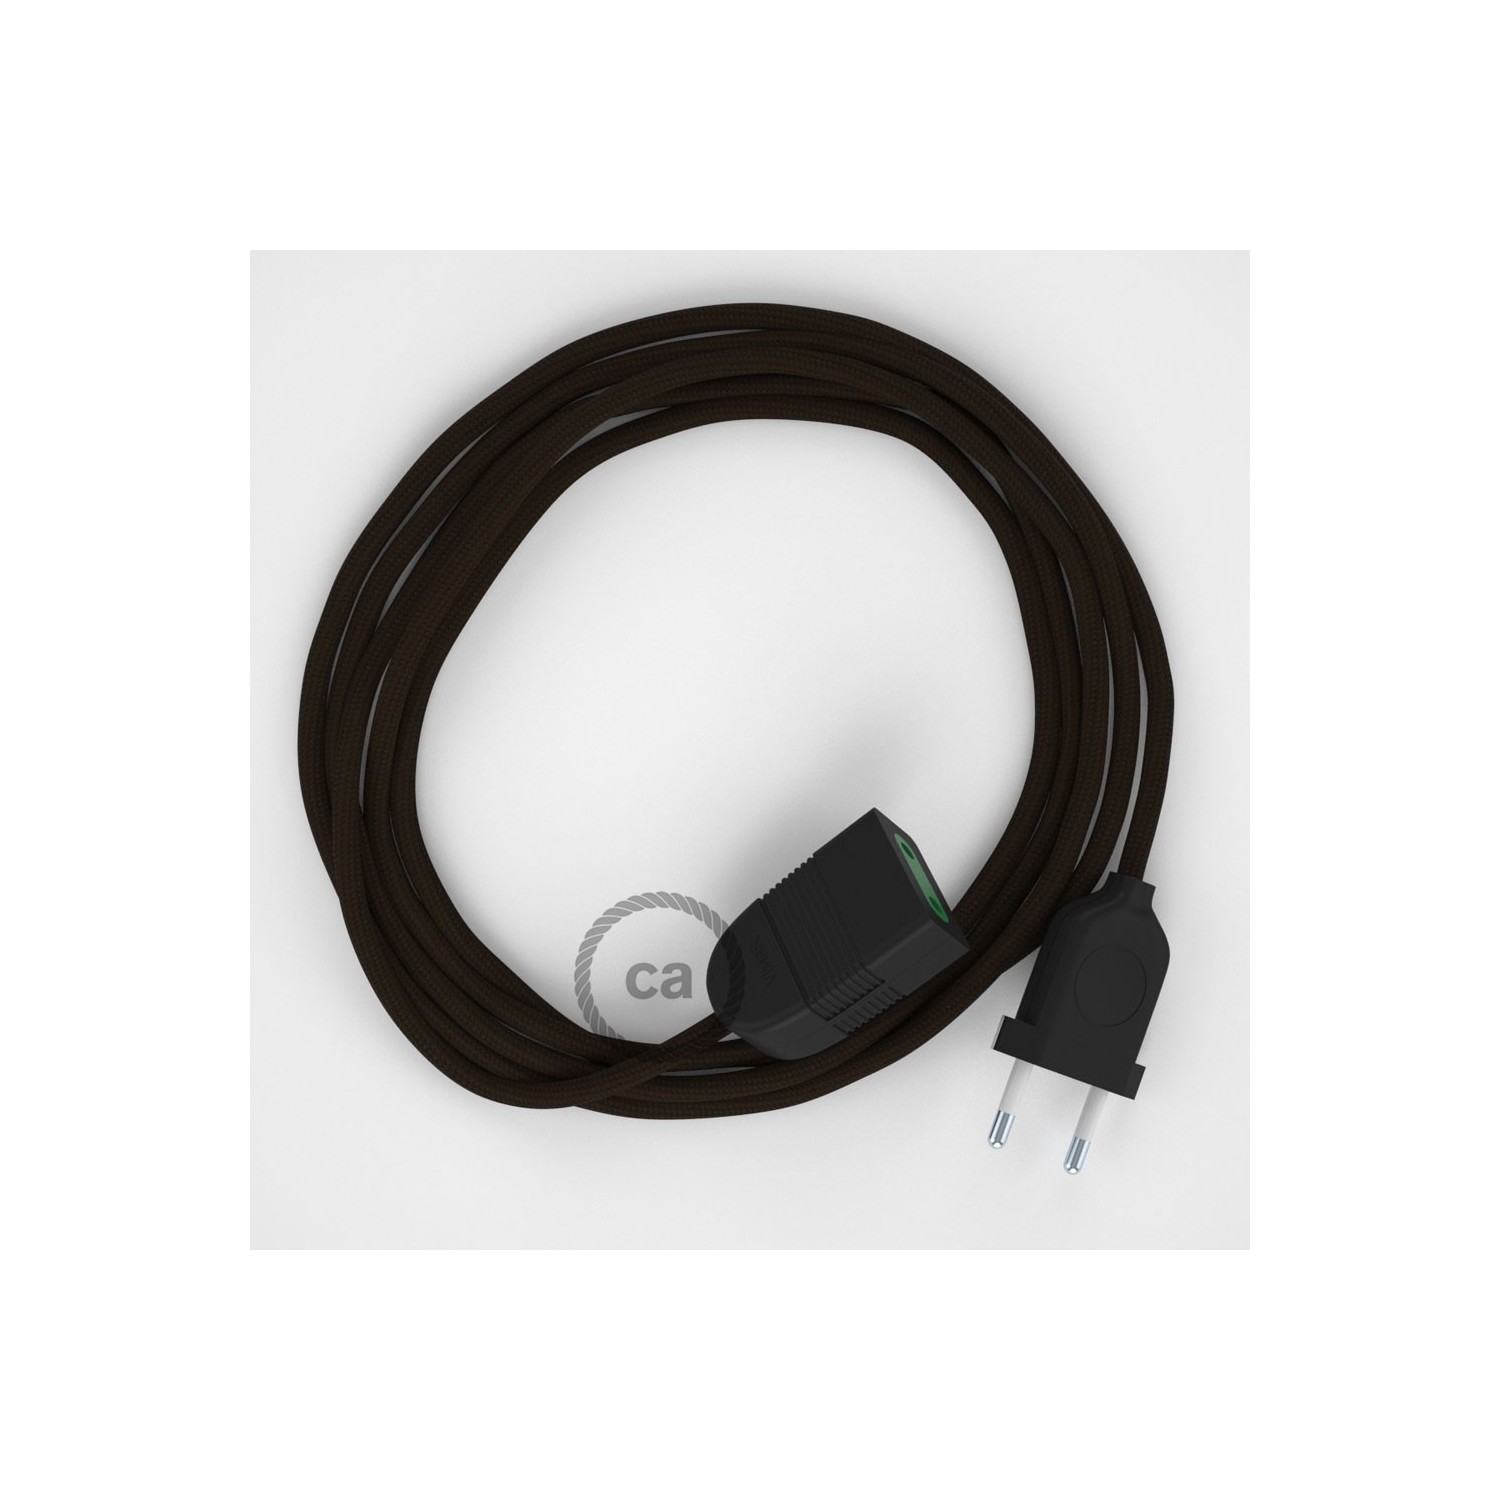 Rallonge électrique avec câble textile RM13 Effet Soie Marron 2P 10A Made in Italy.